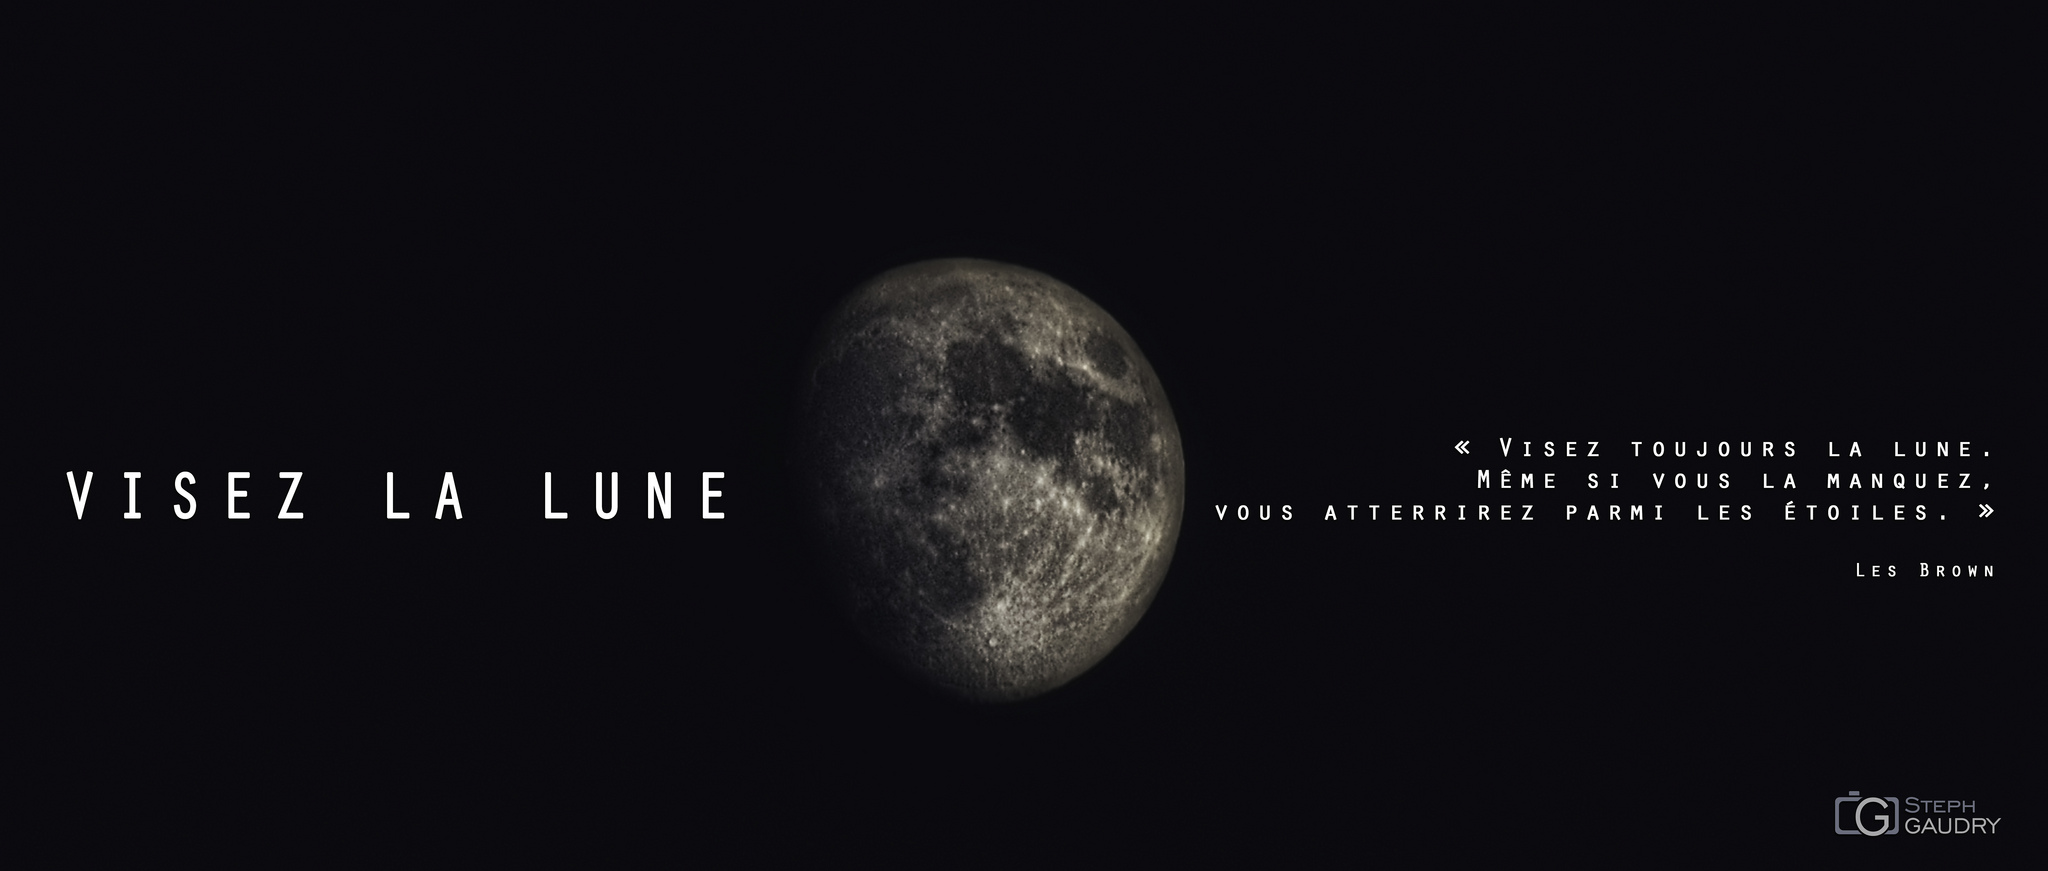 2012_06_30_214400 - Visez la lune... [Click to start slideshow]